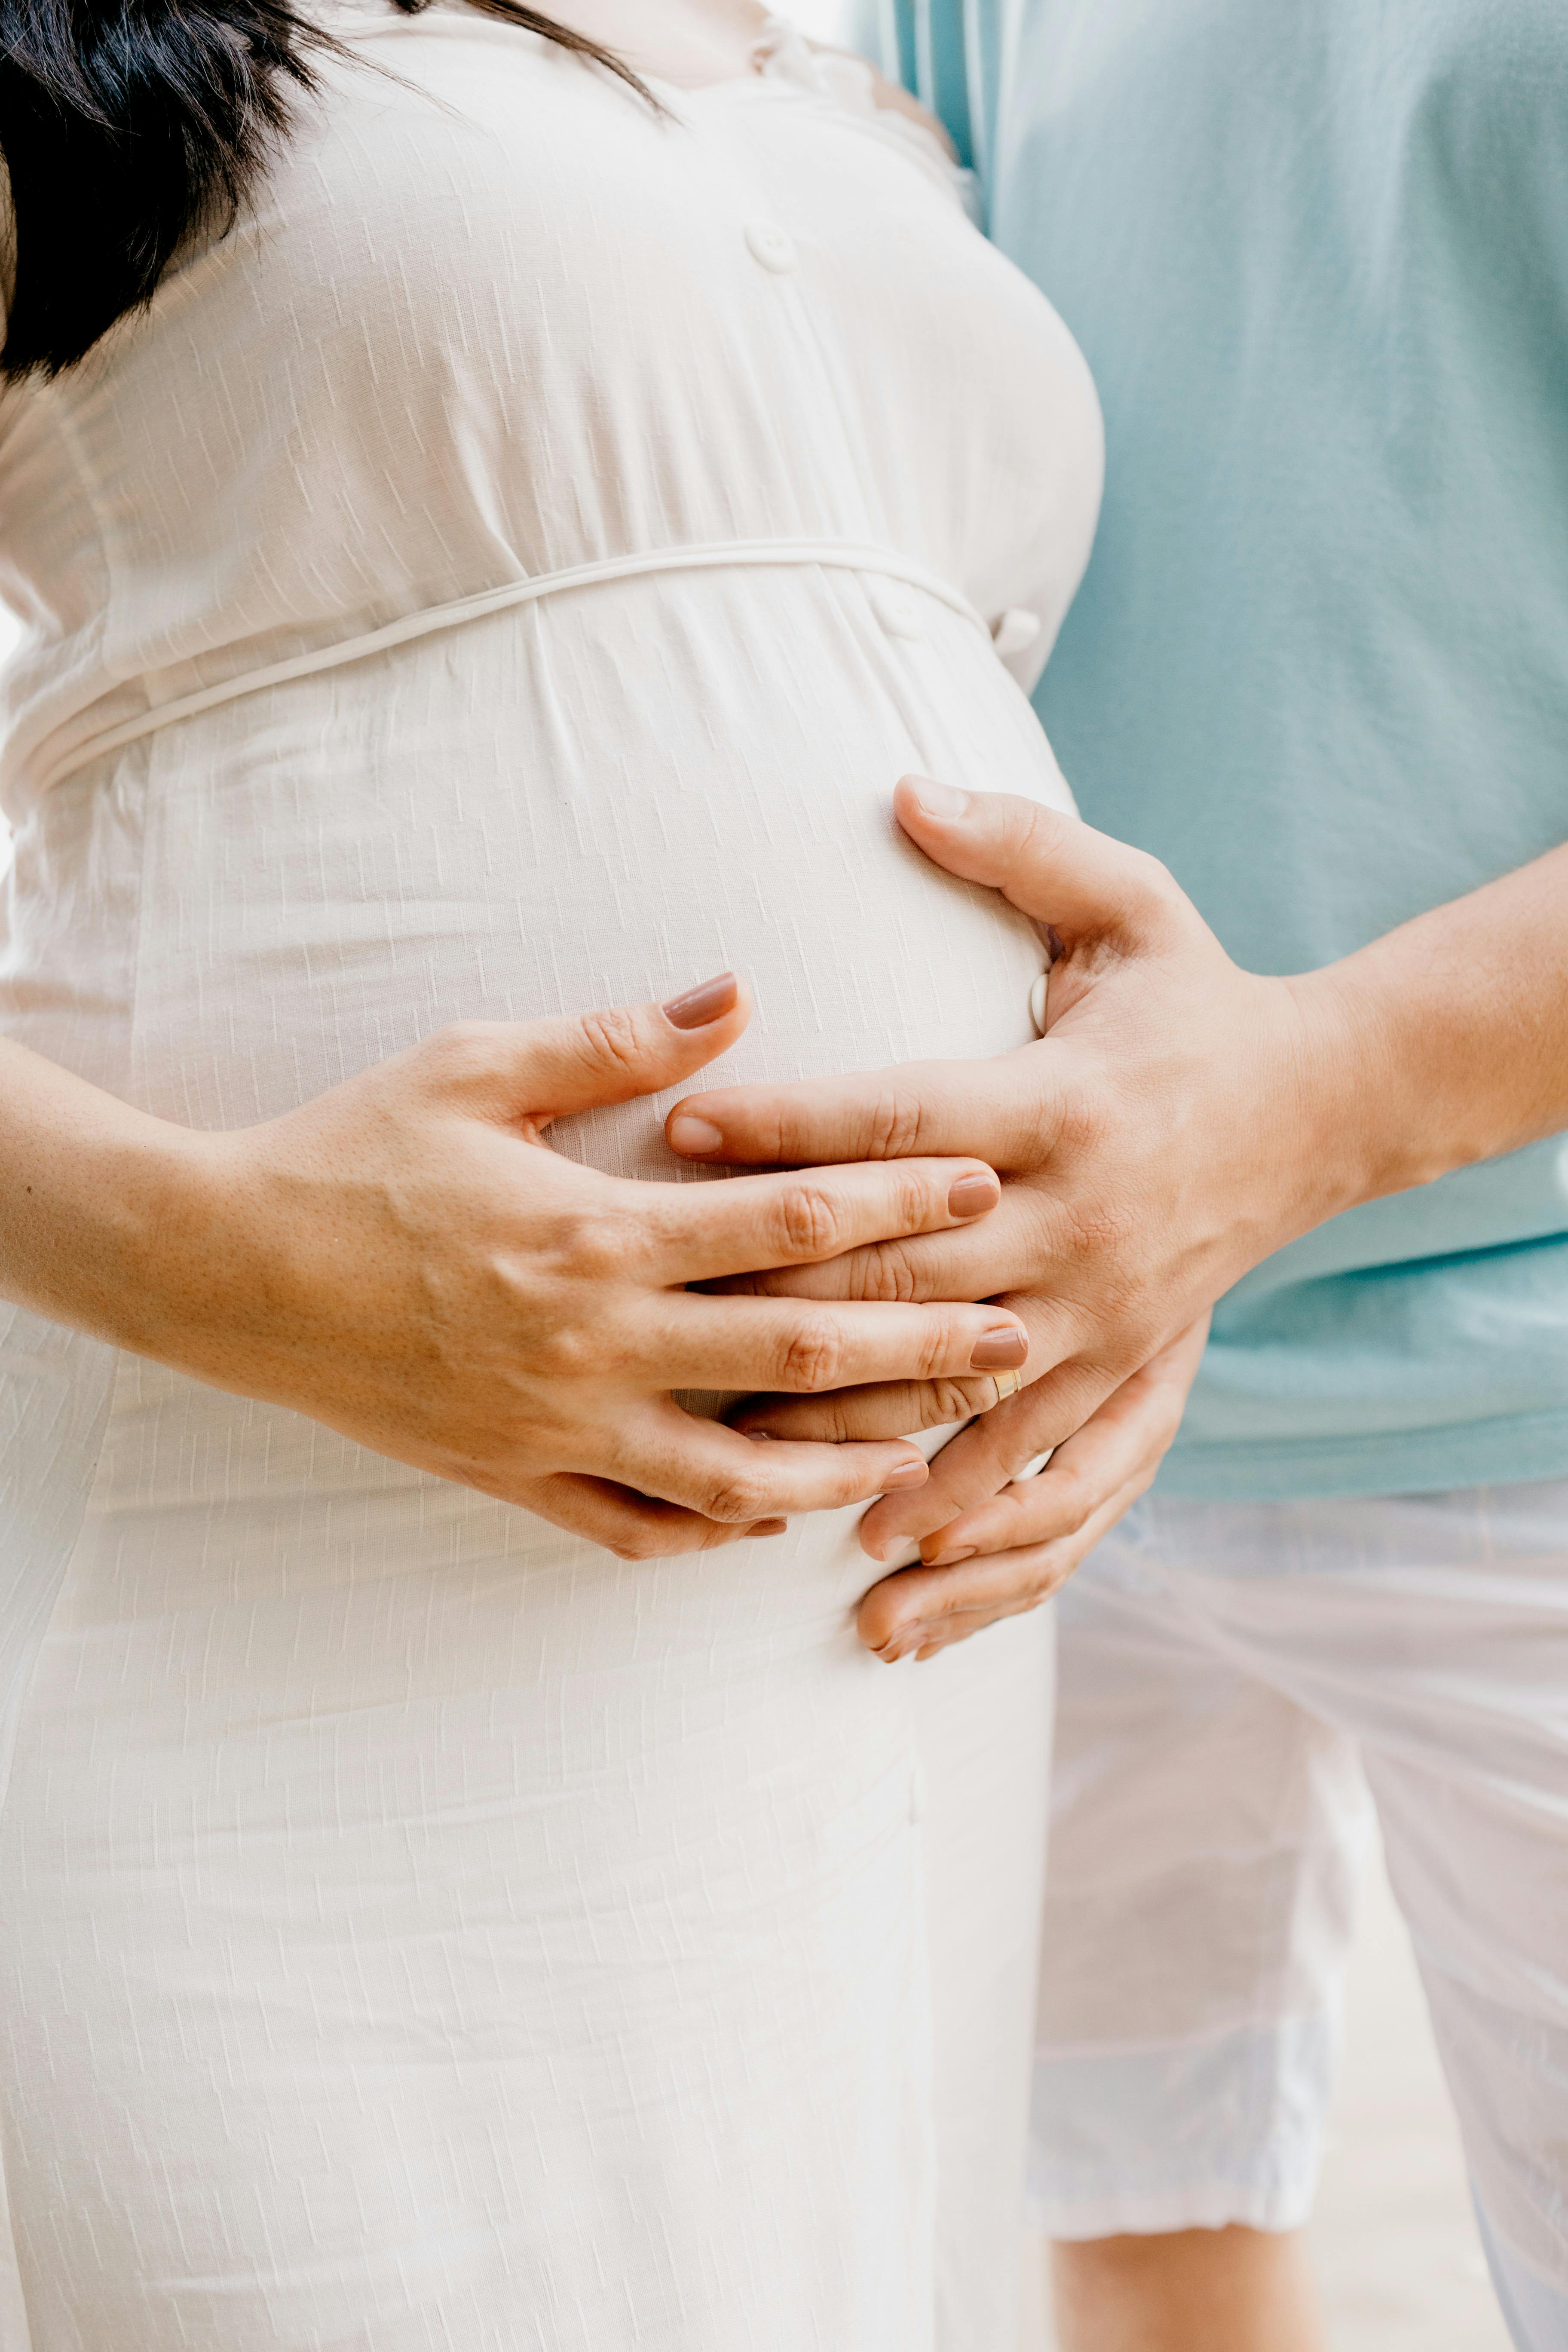 3492 Pregnancy Wallpaper Images Stock Photos  Vectors  Shutterstock